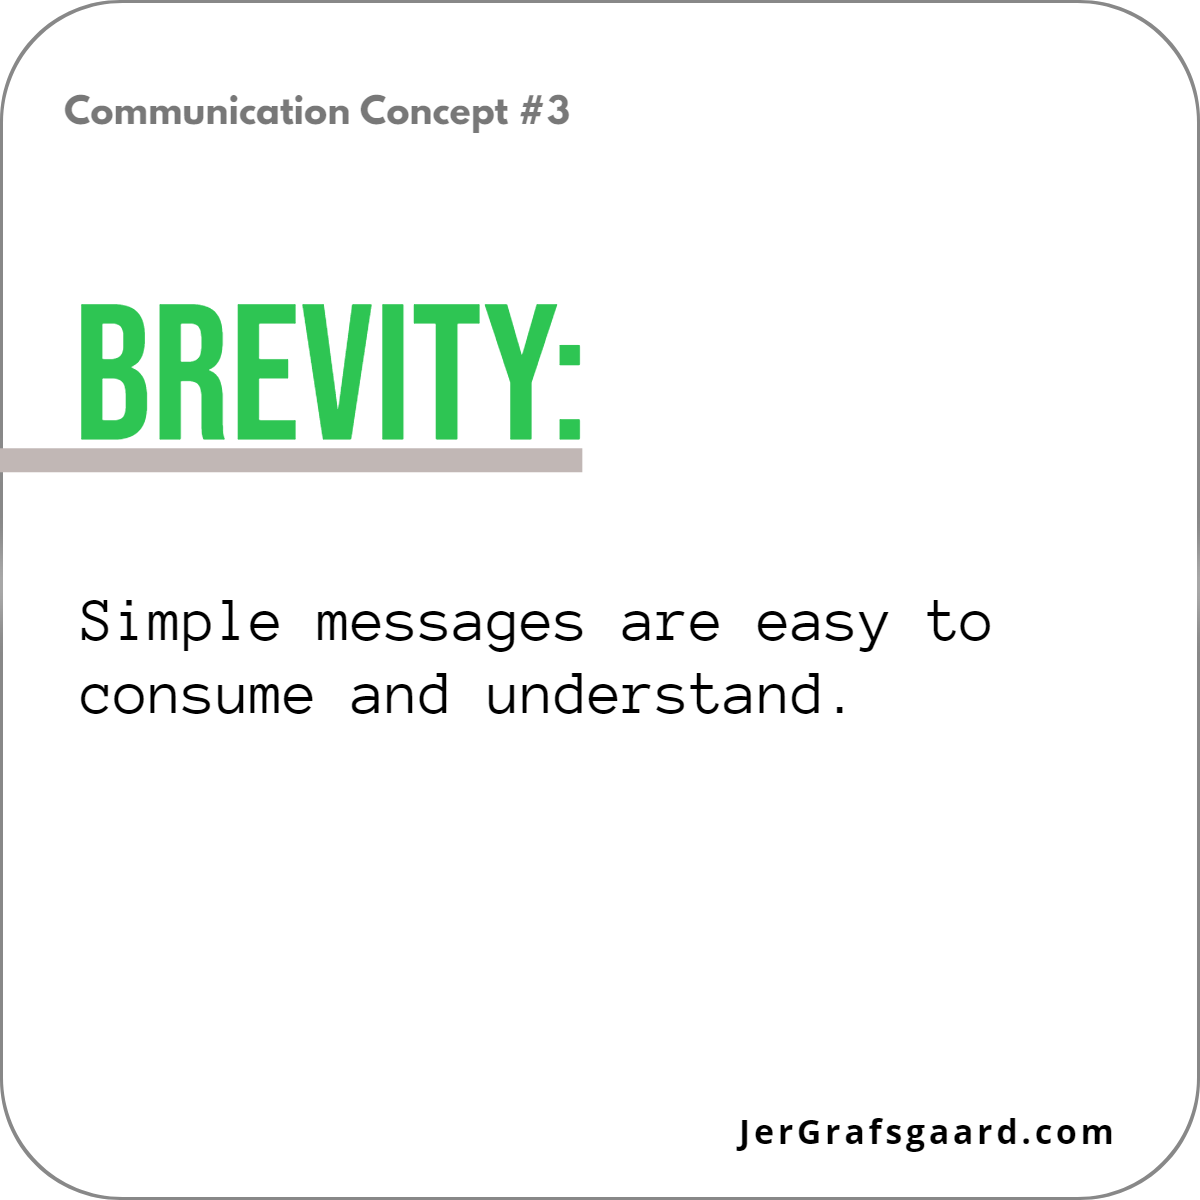 Communication Concept #3